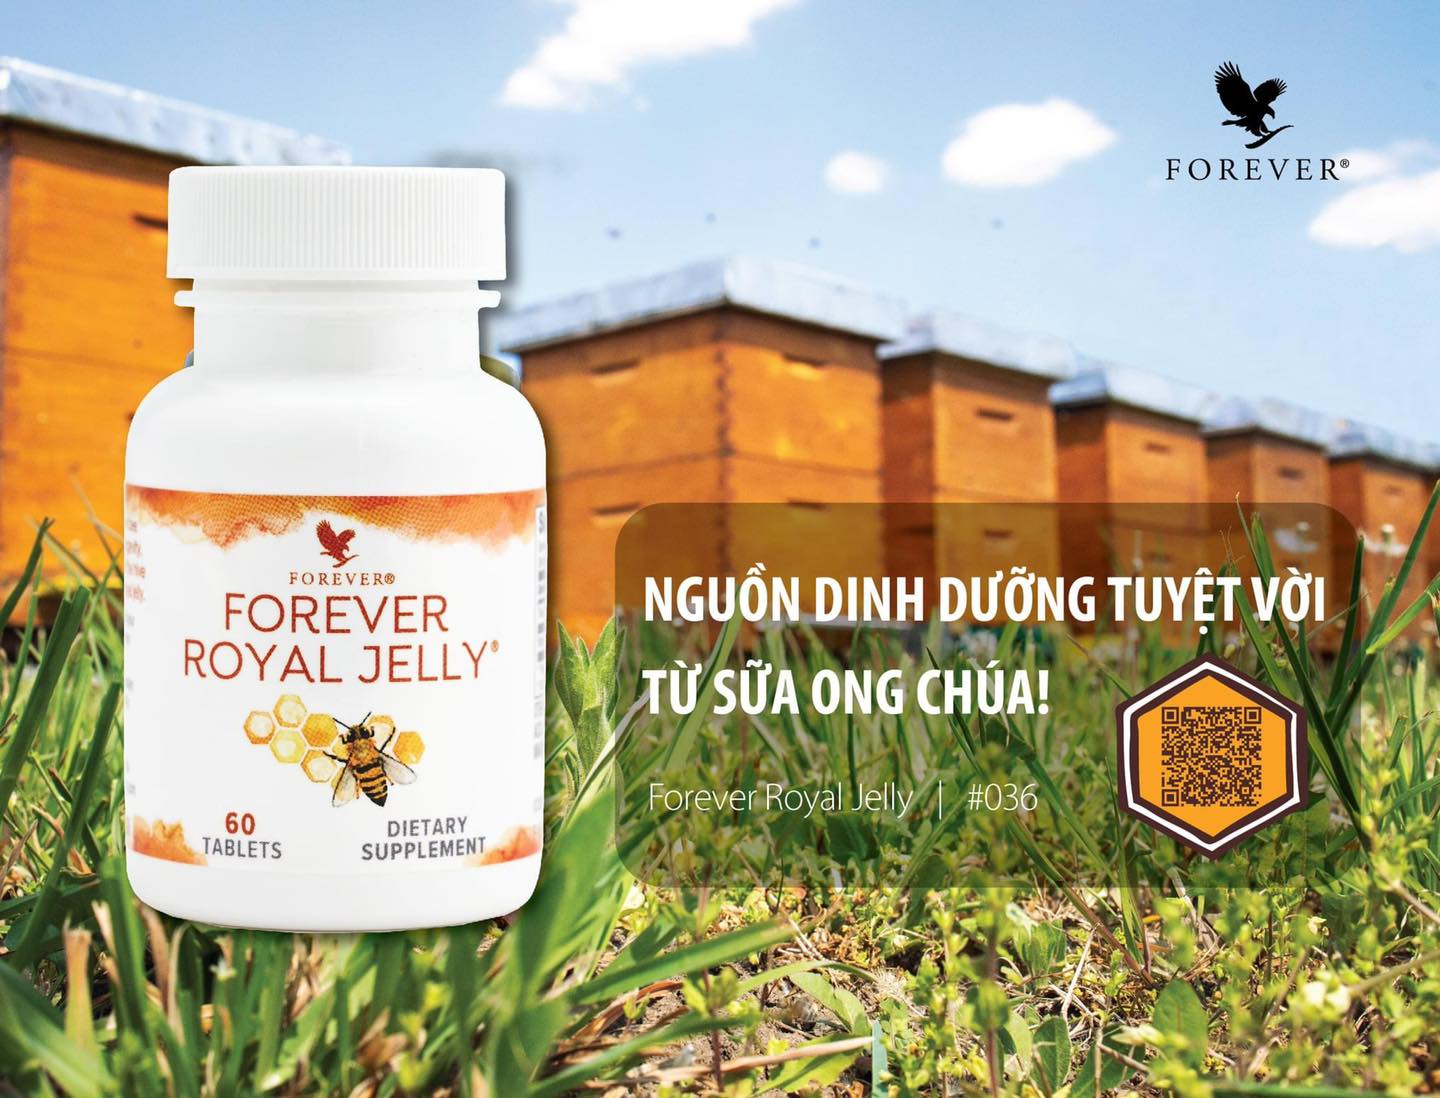 Sữa Ong Chúa Forever Royal Jelly (036 Flp) Nguồn Dinh Dưỡng Tuyệt Vời